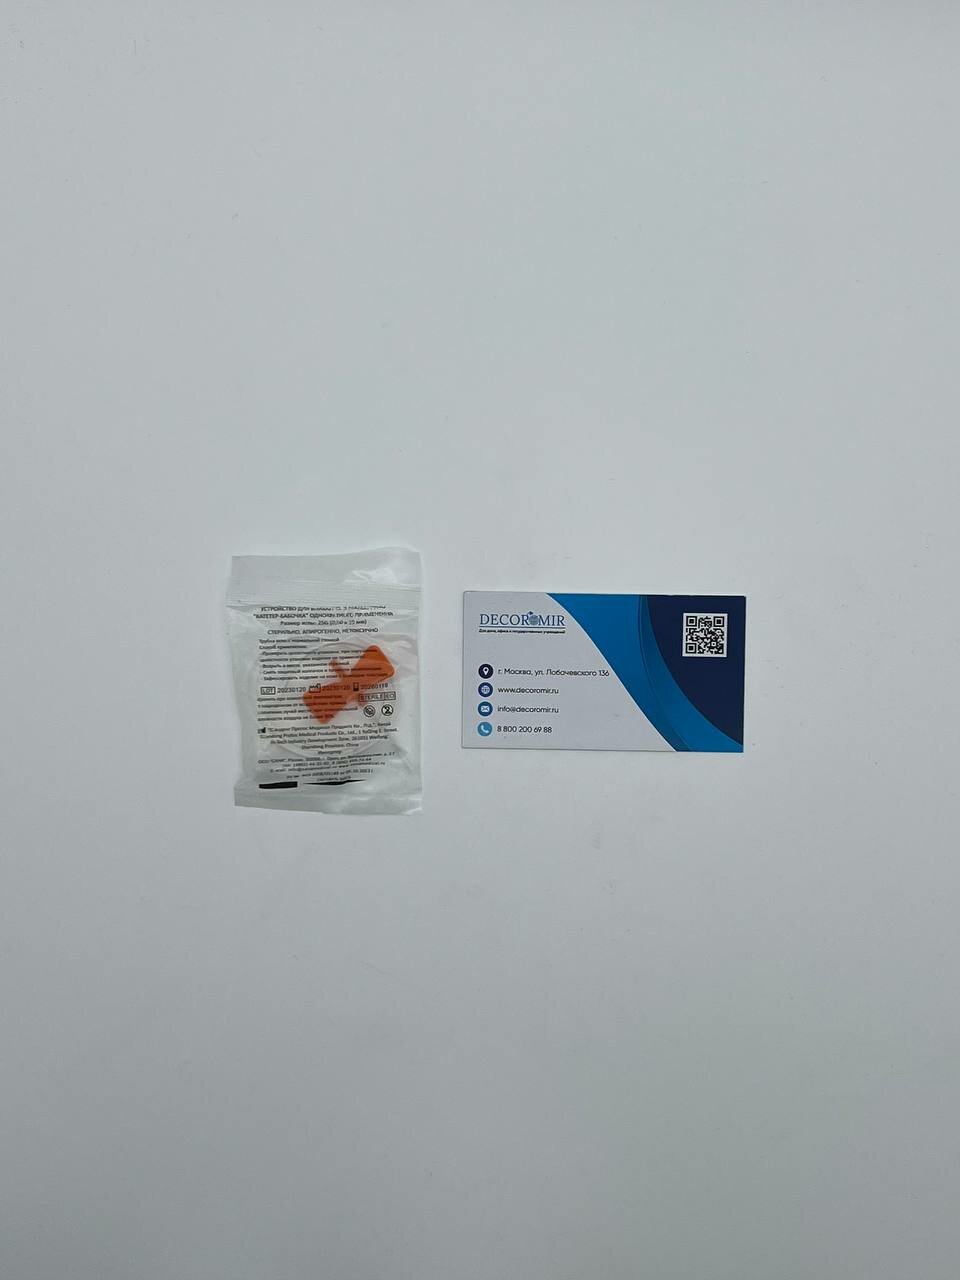 100 шт. 25G Канюля инфузионная оранжевый (Игла бабочка) Decoromir стерильная